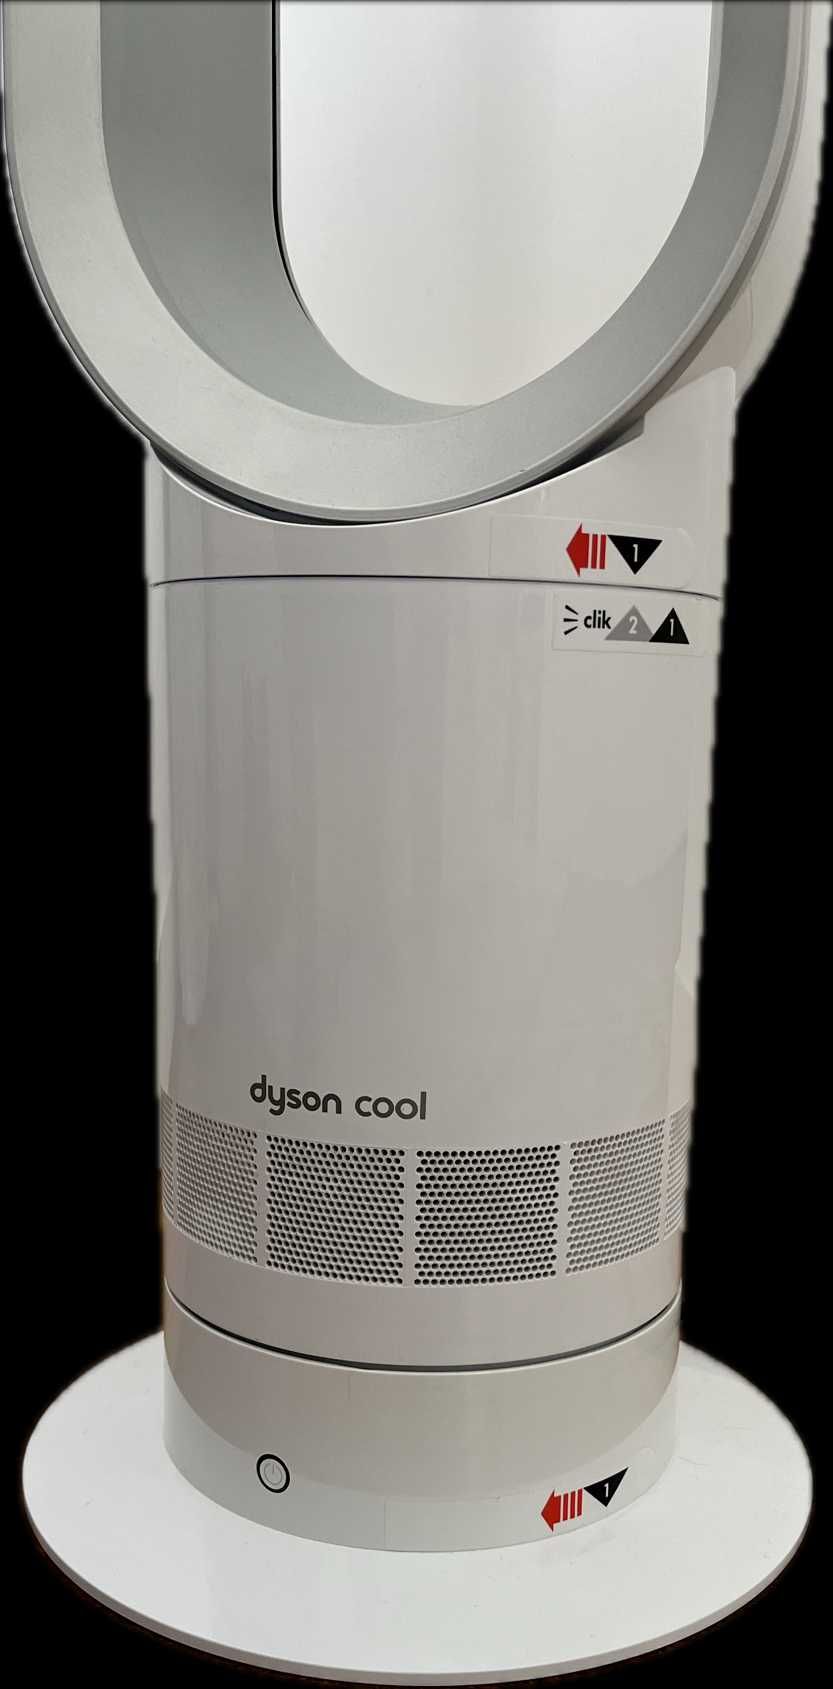 Ventoinha de nova geração - Coluna de Ar DYSON Cool 10 velocidades